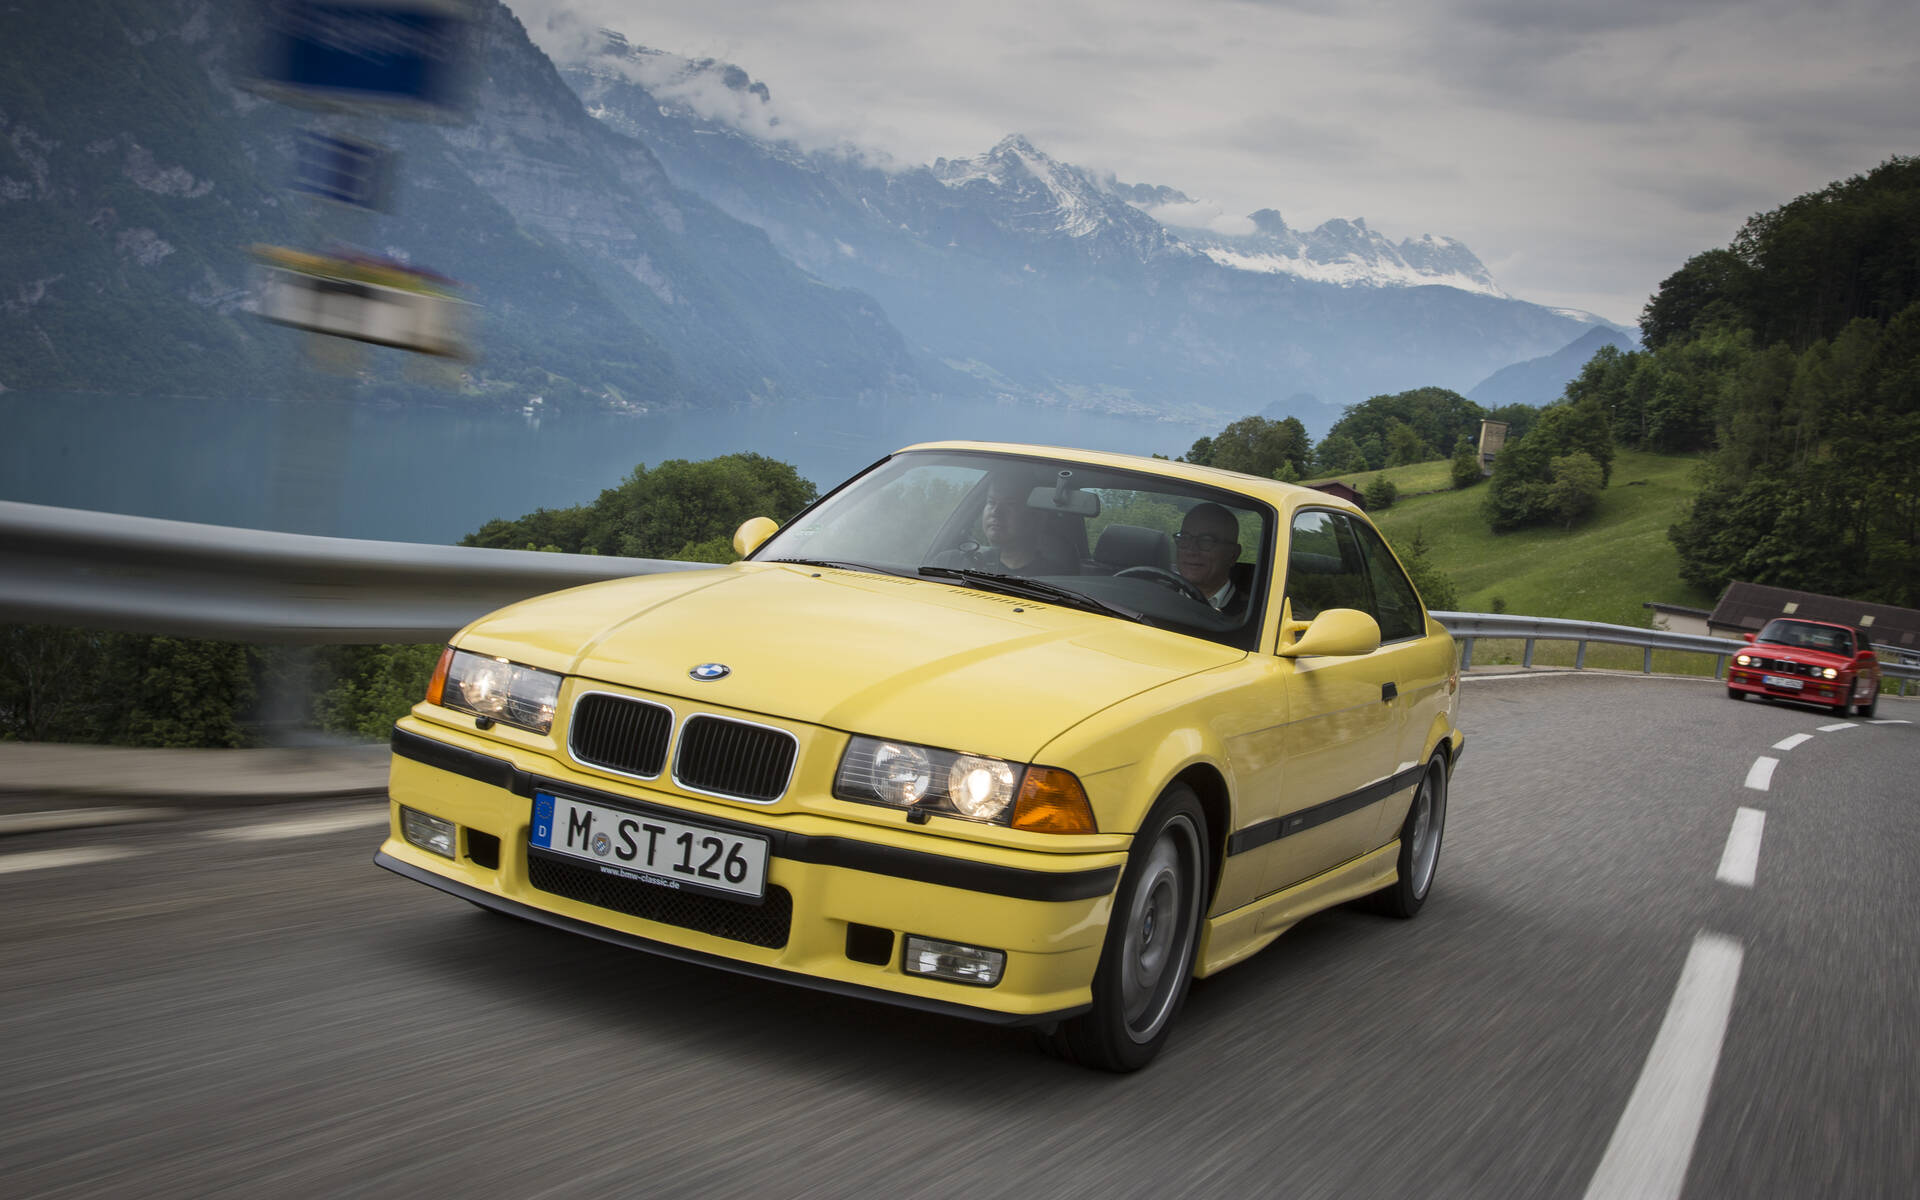 50 ans de voitures BMW M en images 527884-50-ans-de-voitures-bmw-m-en-images